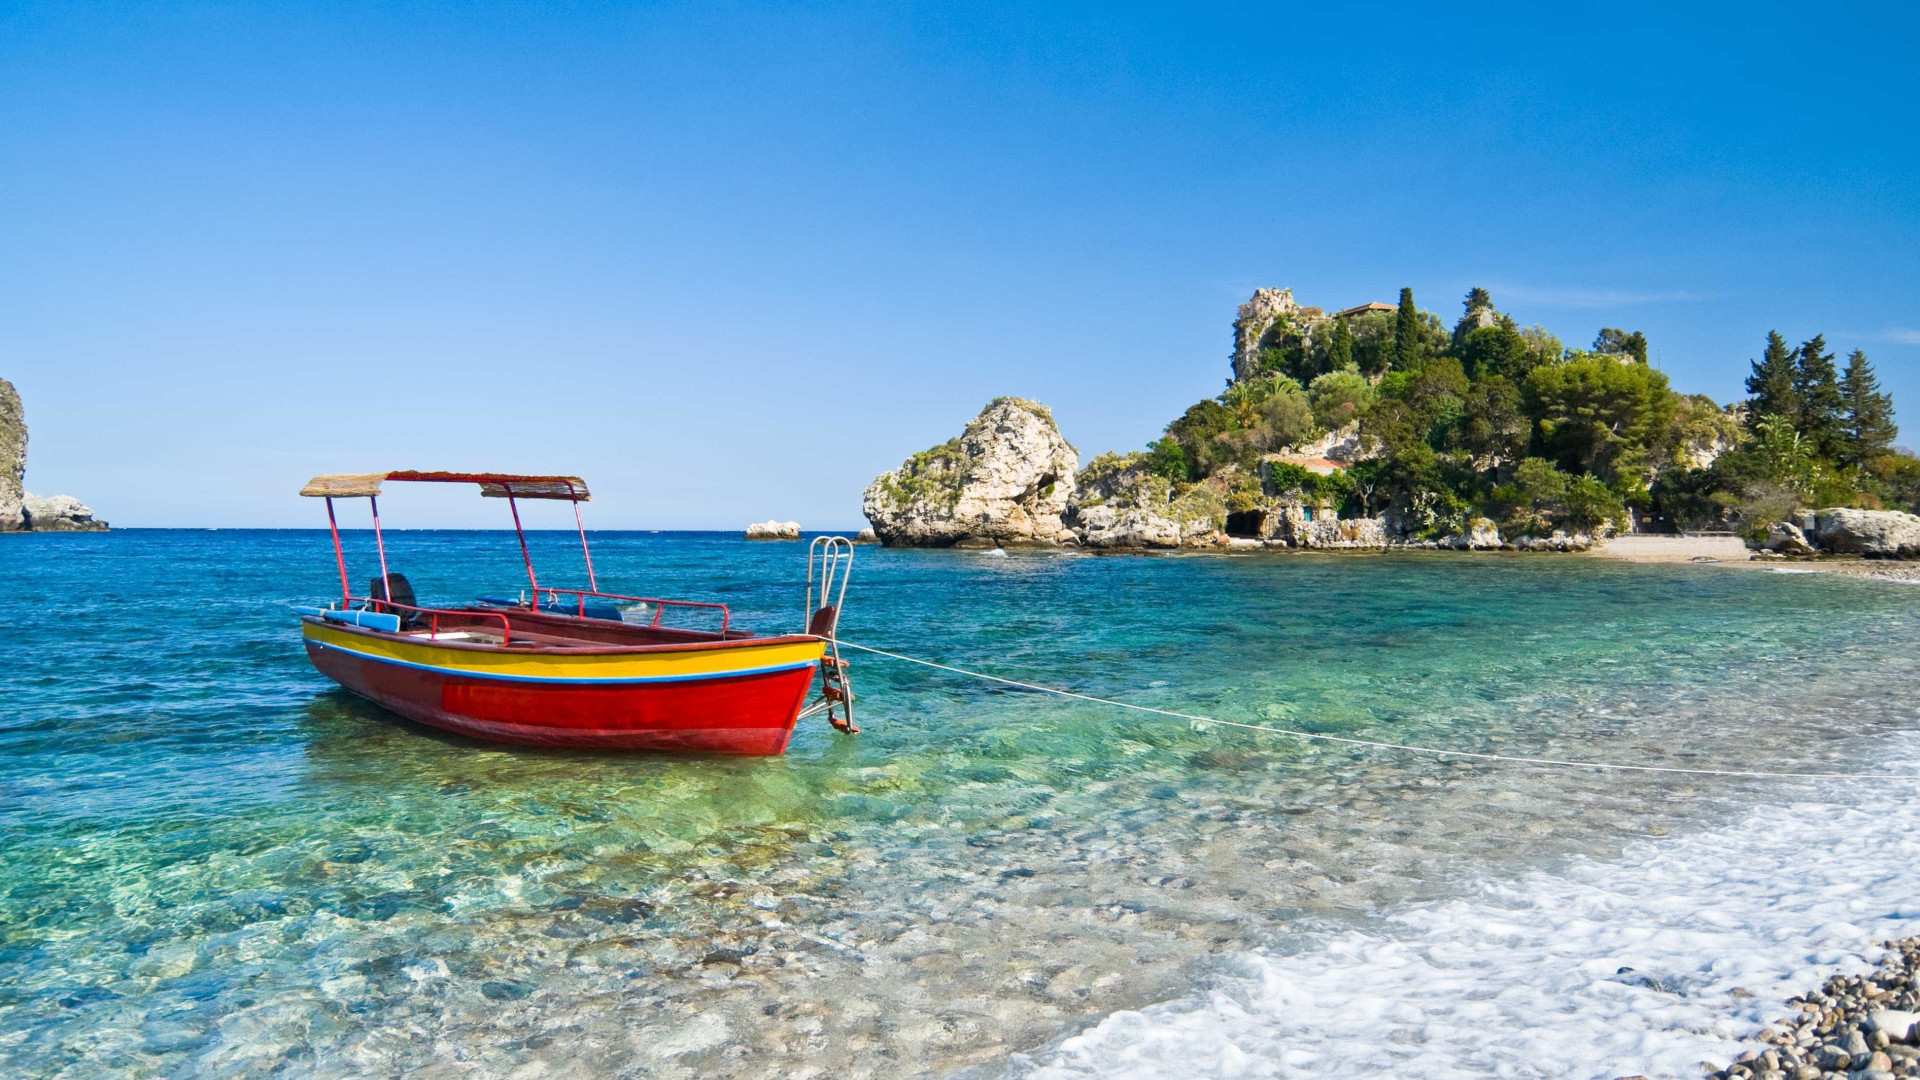 Saiba quais as praias mais caras
para curtir o verão na Itália